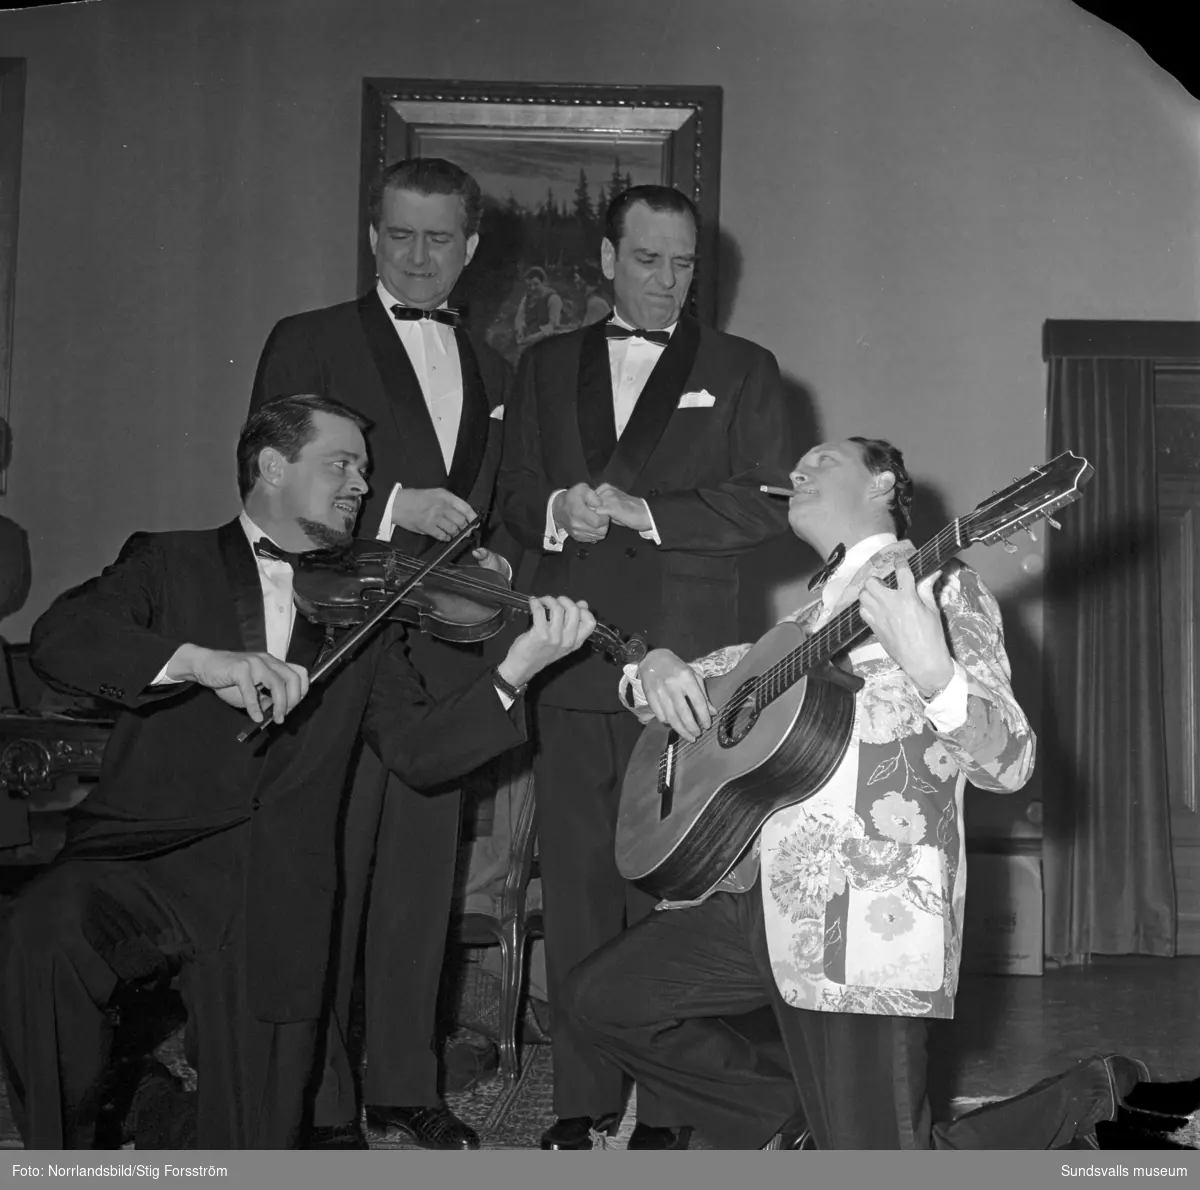 Celebra artister i Stadshussalongen 1960. Trion Swe-Danes med Alice Babs, Svend Asmussen och Ulric Neumann, vid det här tillfället utökad med Stig Järrel och Gösta Bernhard till "Vi 5".